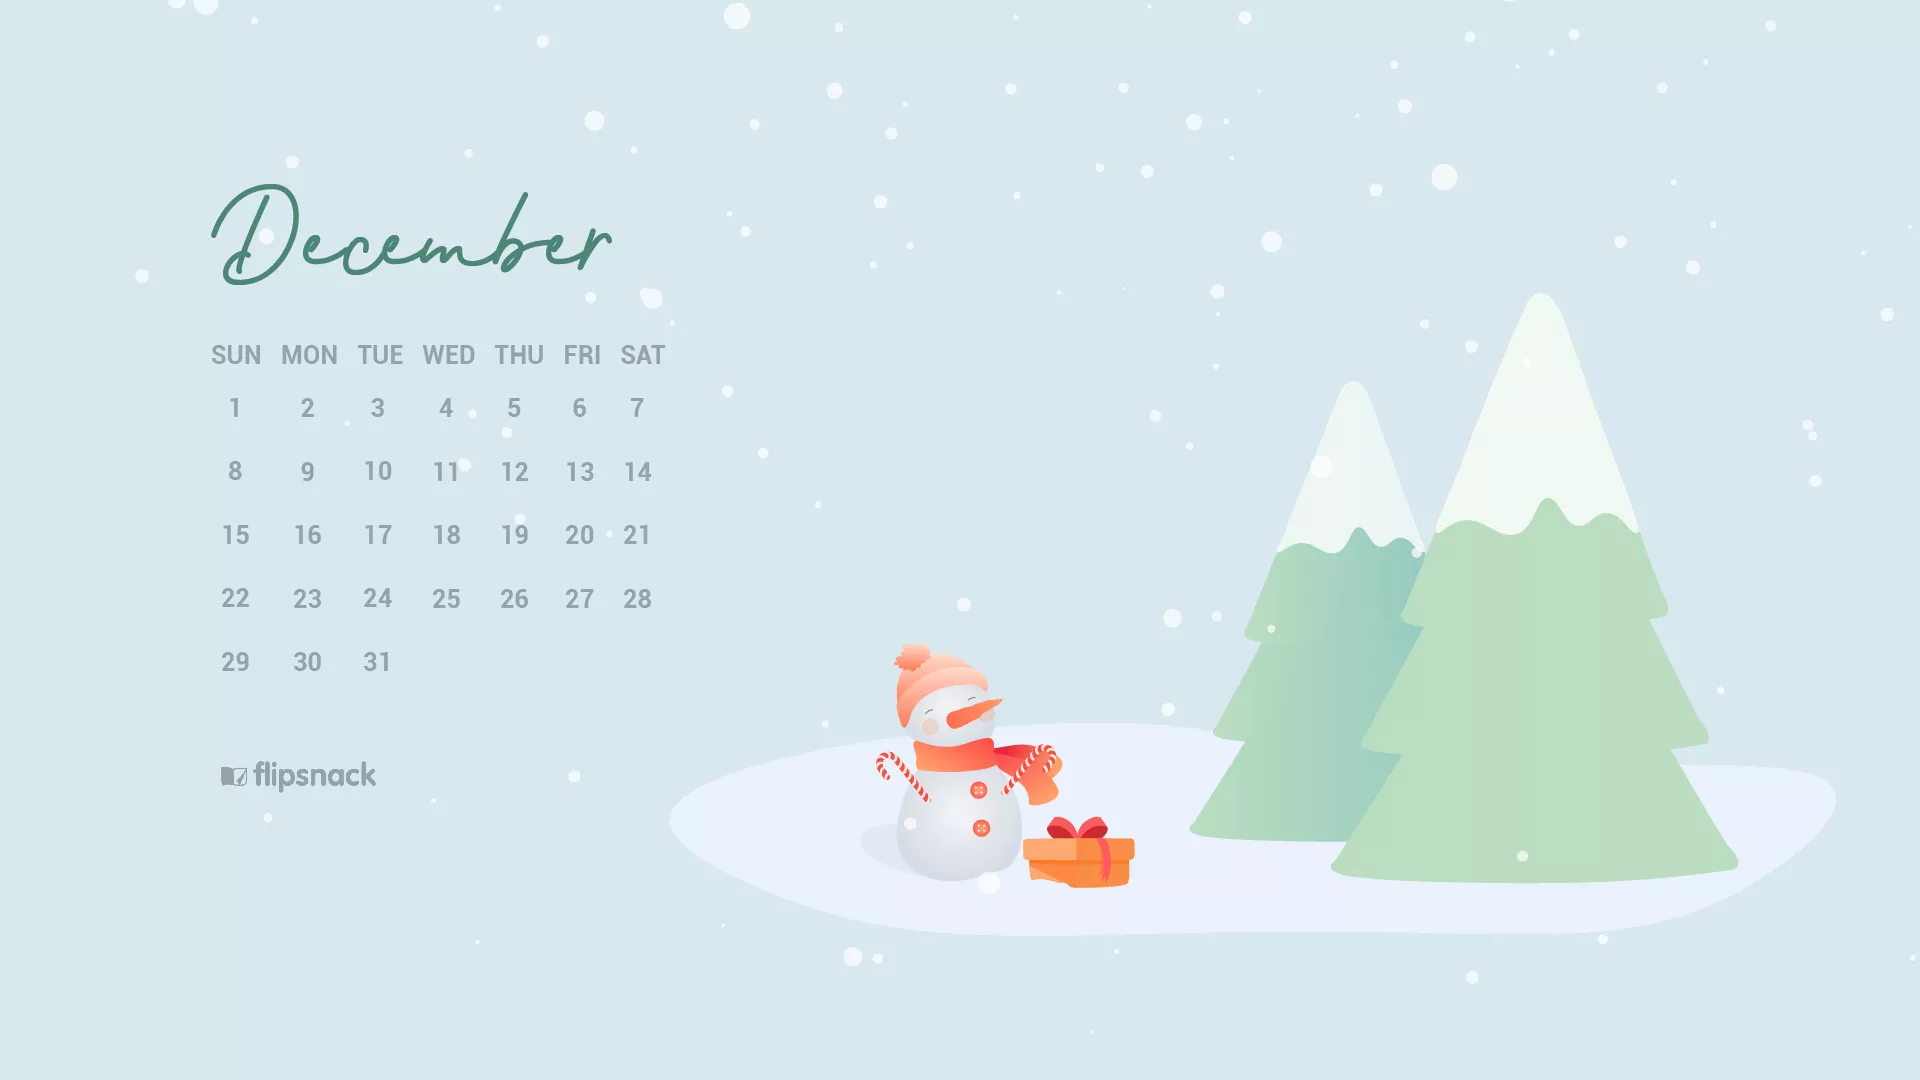 Lịch nền tháng 12 miễn phí: Đây là tháng cuối cùng của năm, bạn đã sẵn sàng cho một năm mới sôi động và nhiều niềm vui chưa? Và để chuẩn bị cho năm mới, hãy xem hình ảnh liên quan để lựa chọn một lịch nền miễn phí đẹp và hợp xu hướng.